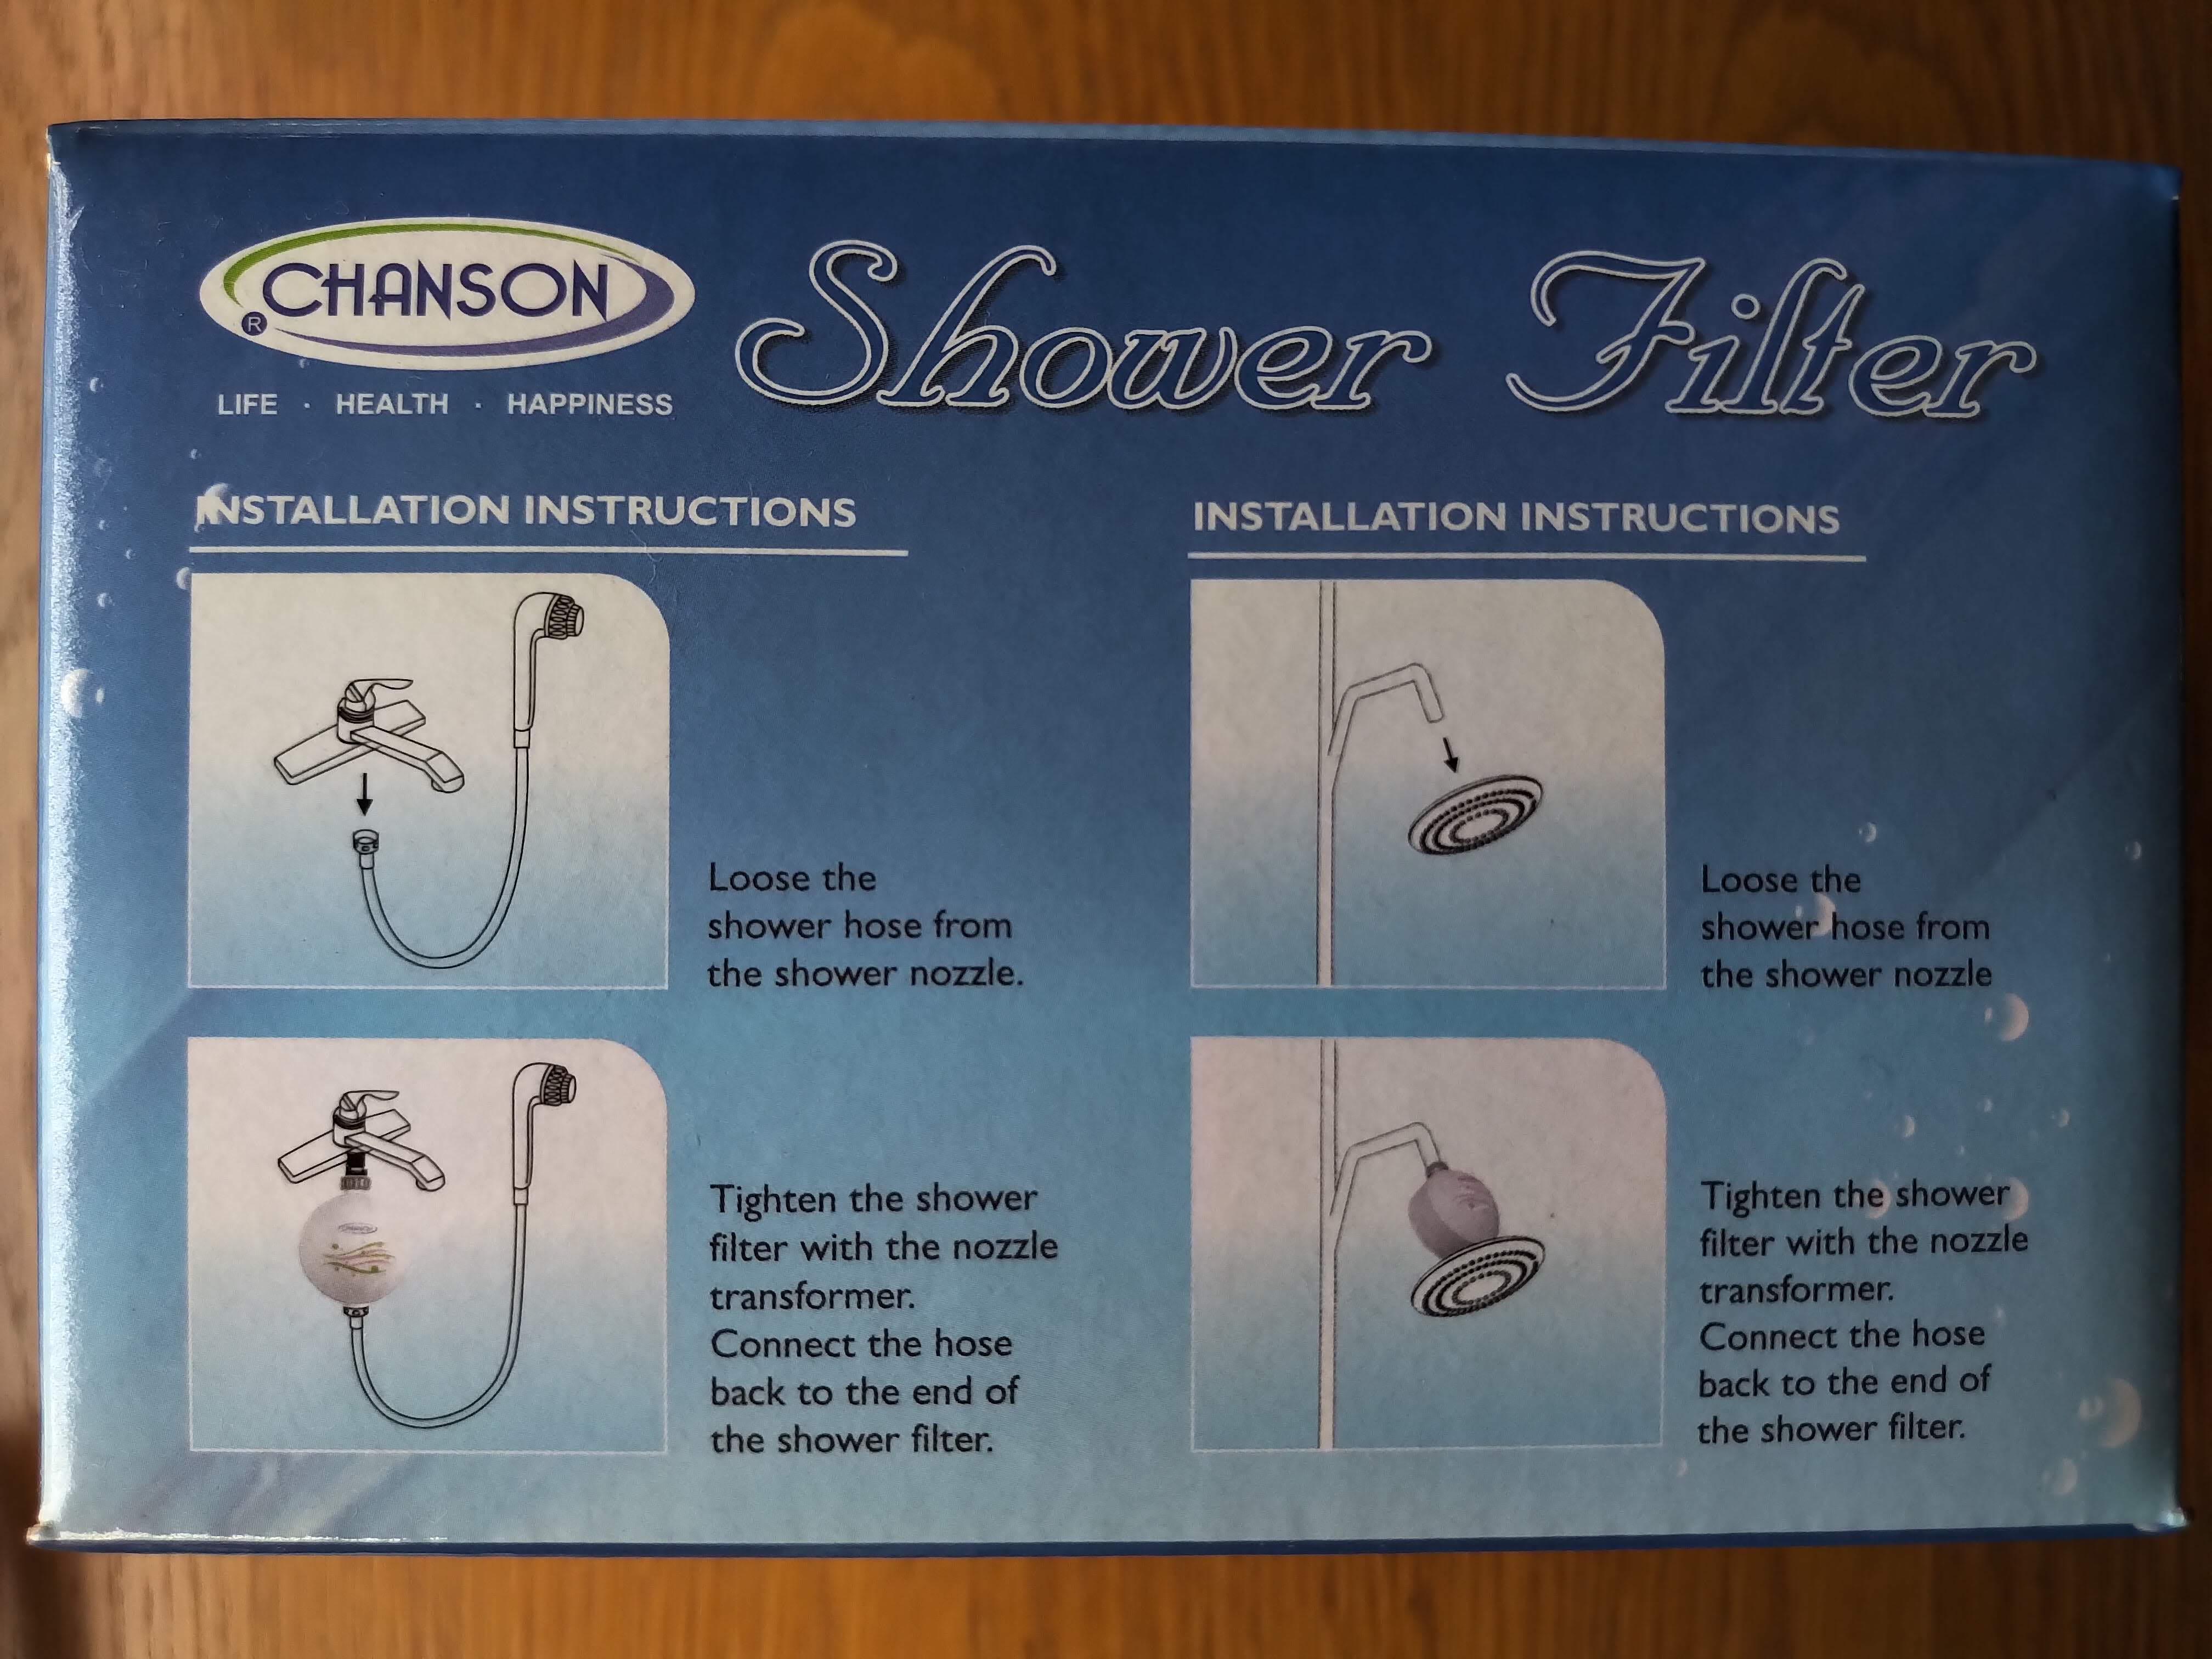 Lọc Nước Tắm Chanson - Spa Shower Model BF-007, lọc clo (chlor) và cloramin (chloramine). Lọc Trên 20.000 lít trong 1 năm - Màu Trắng - nhập khẩu chính hãng - Giao toàn quốc miễn phí